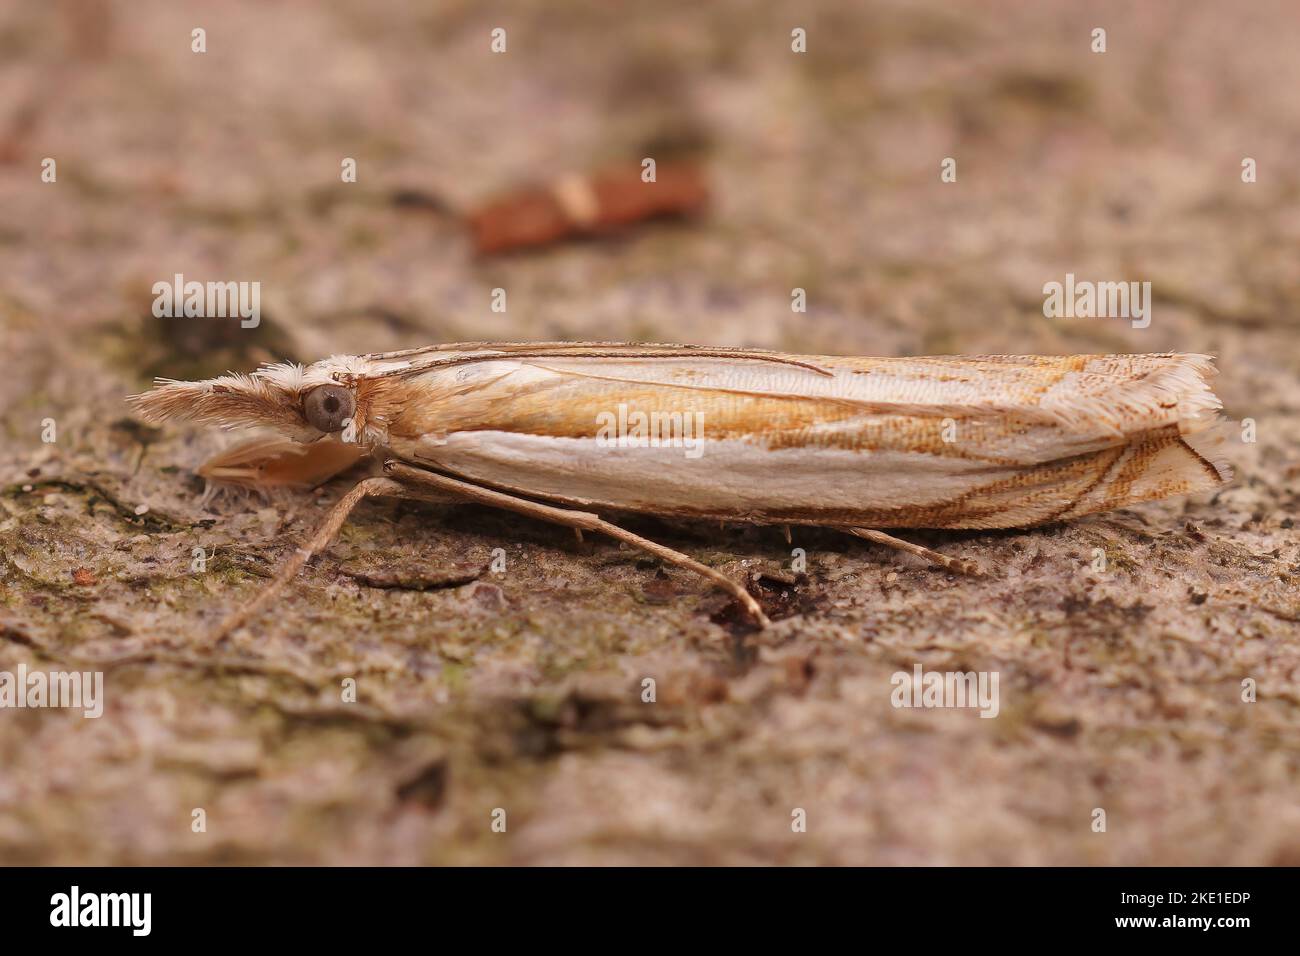 A closeup shot of the Crambus pascuella crambidae moth Stock Photo